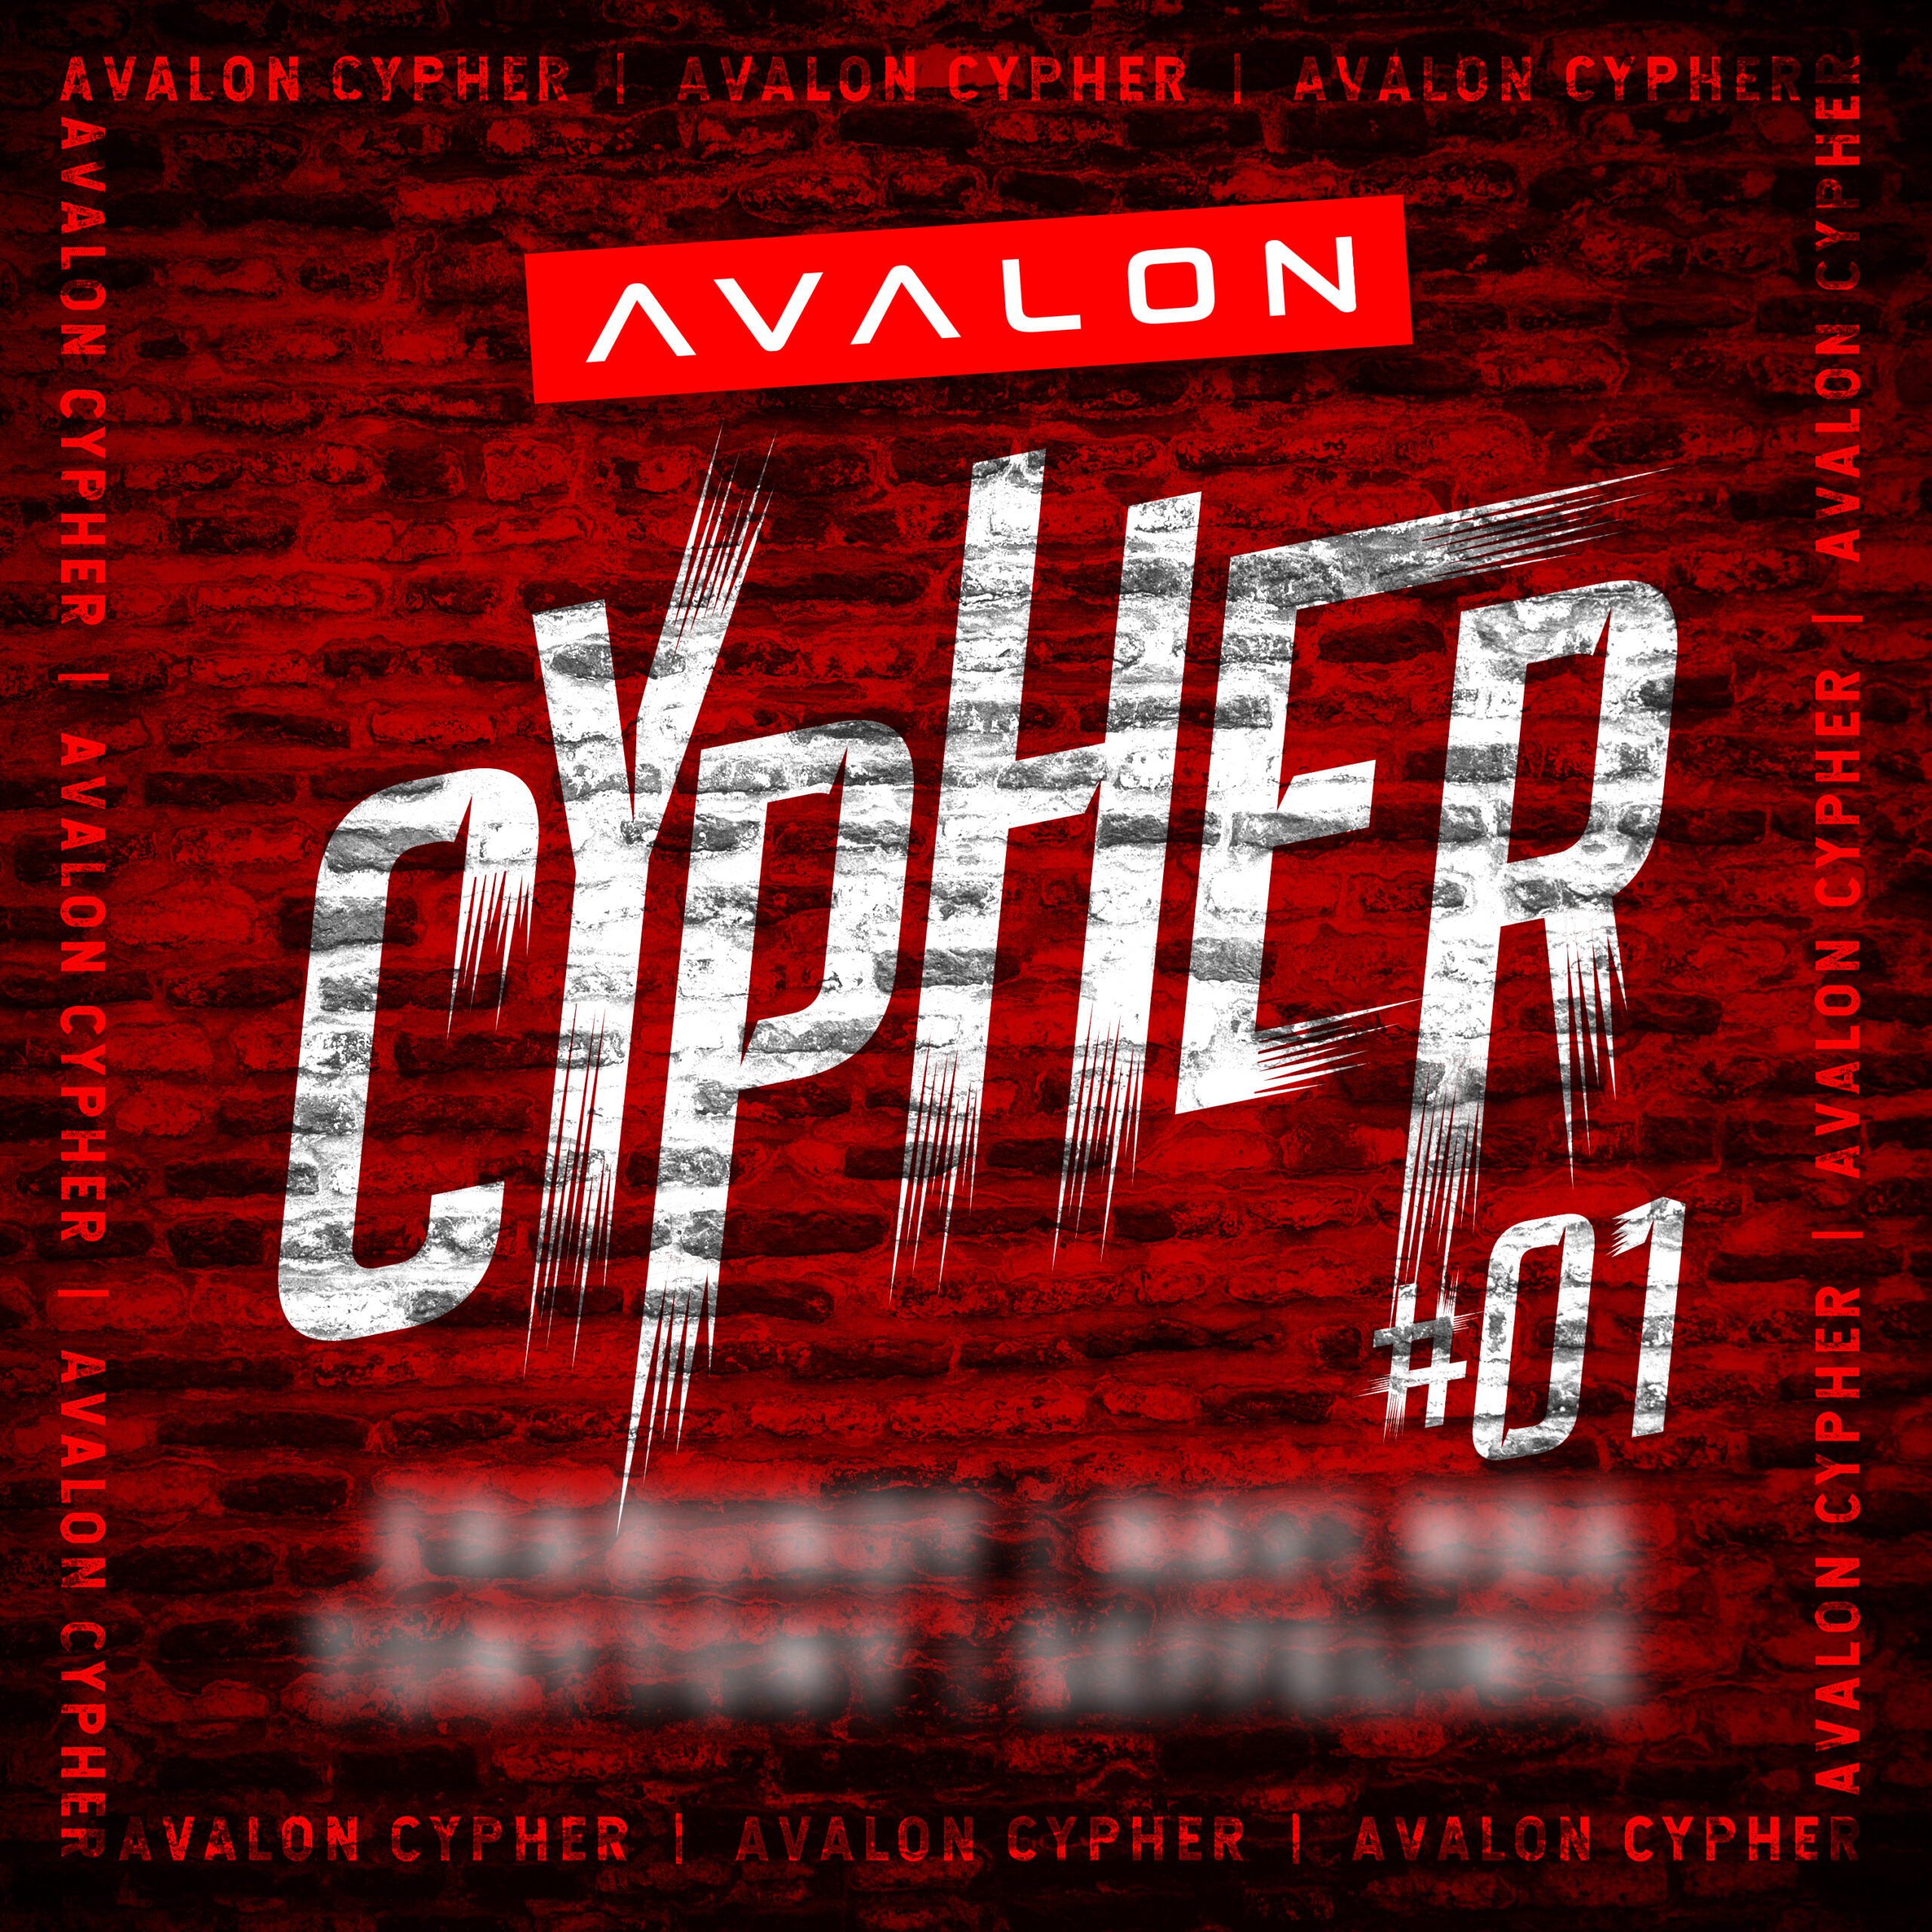 Wie hoop jij dat er op de eerste ‘Avalon Cypher’ staat?